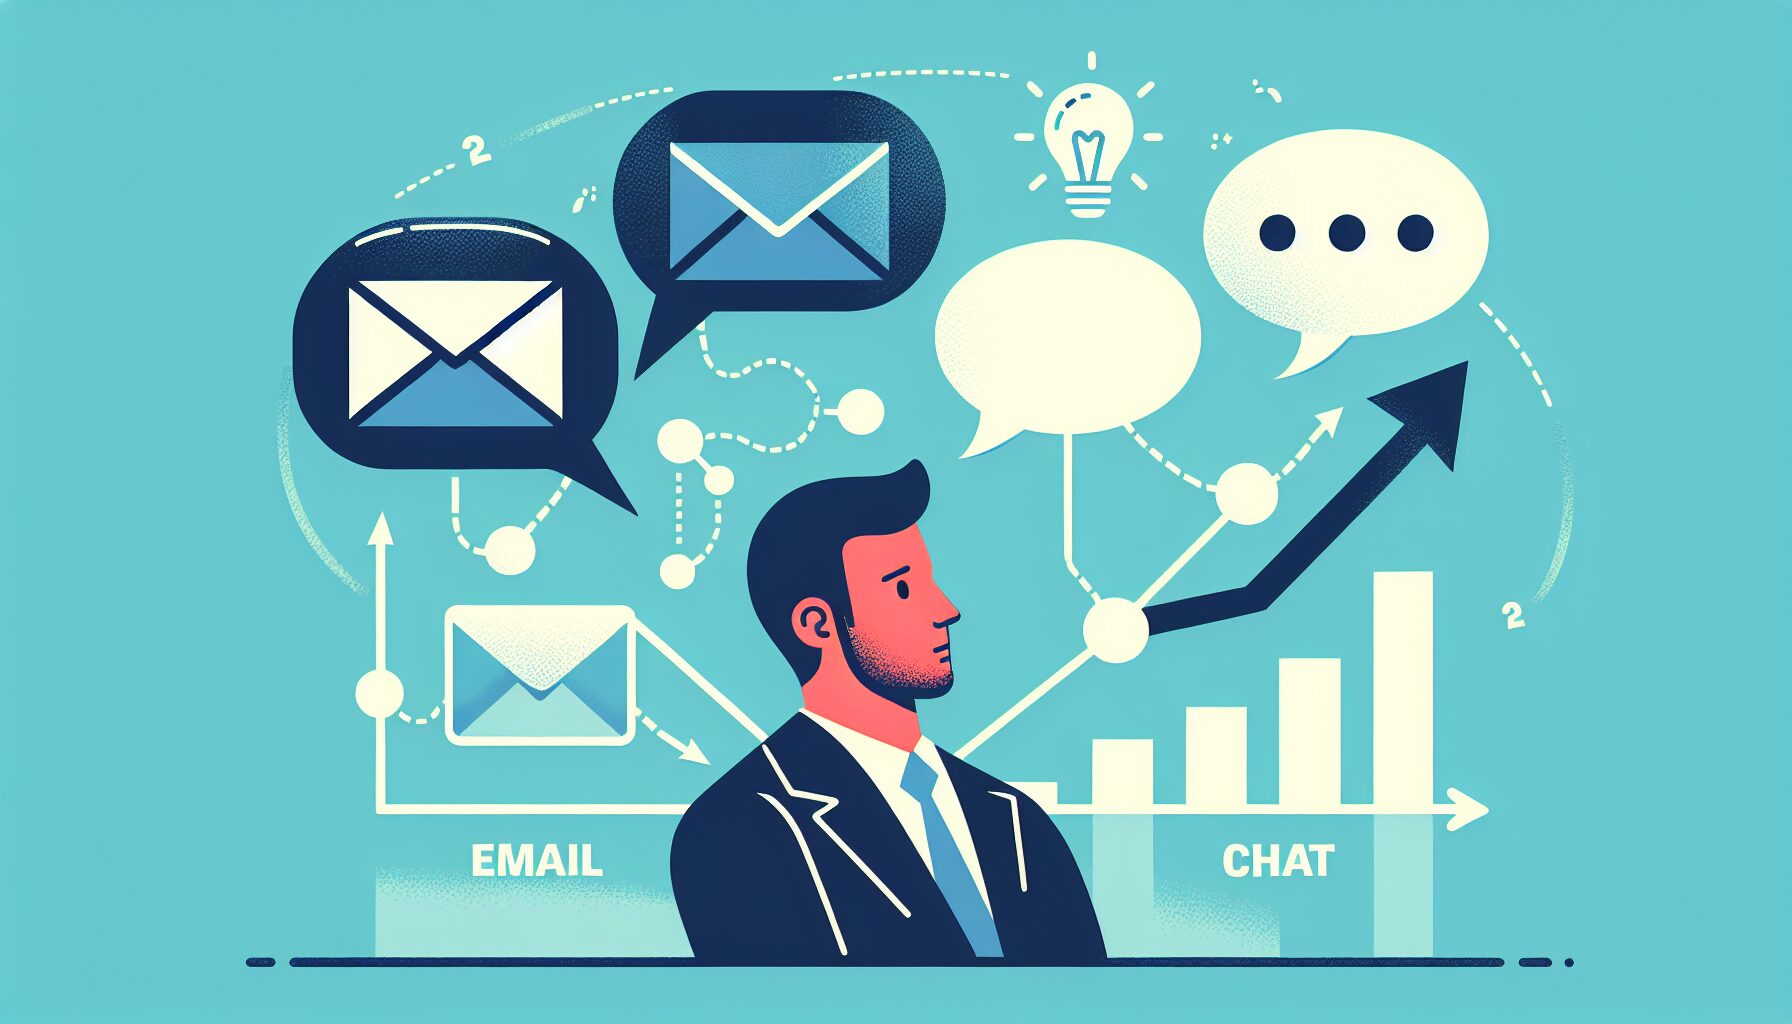 ビジネスコミュニケーション効率化のためのメールとチャットの使い分け方